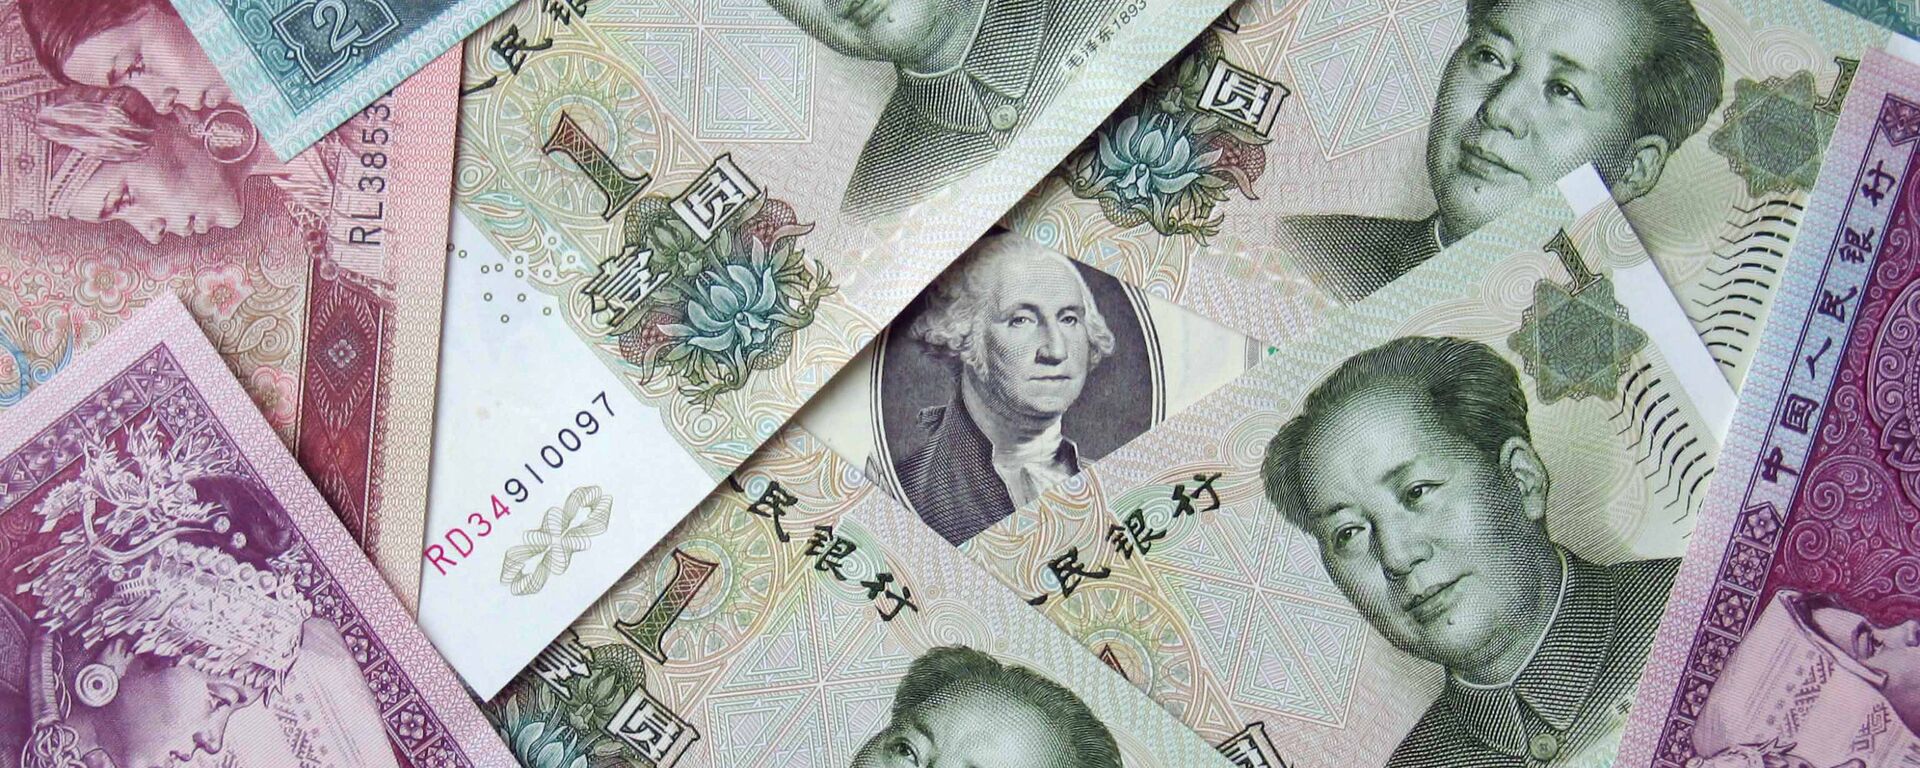 Китайские юани и 100 долларов, архивное фото - Sputnik Беларусь, 1920, 08.05.2021